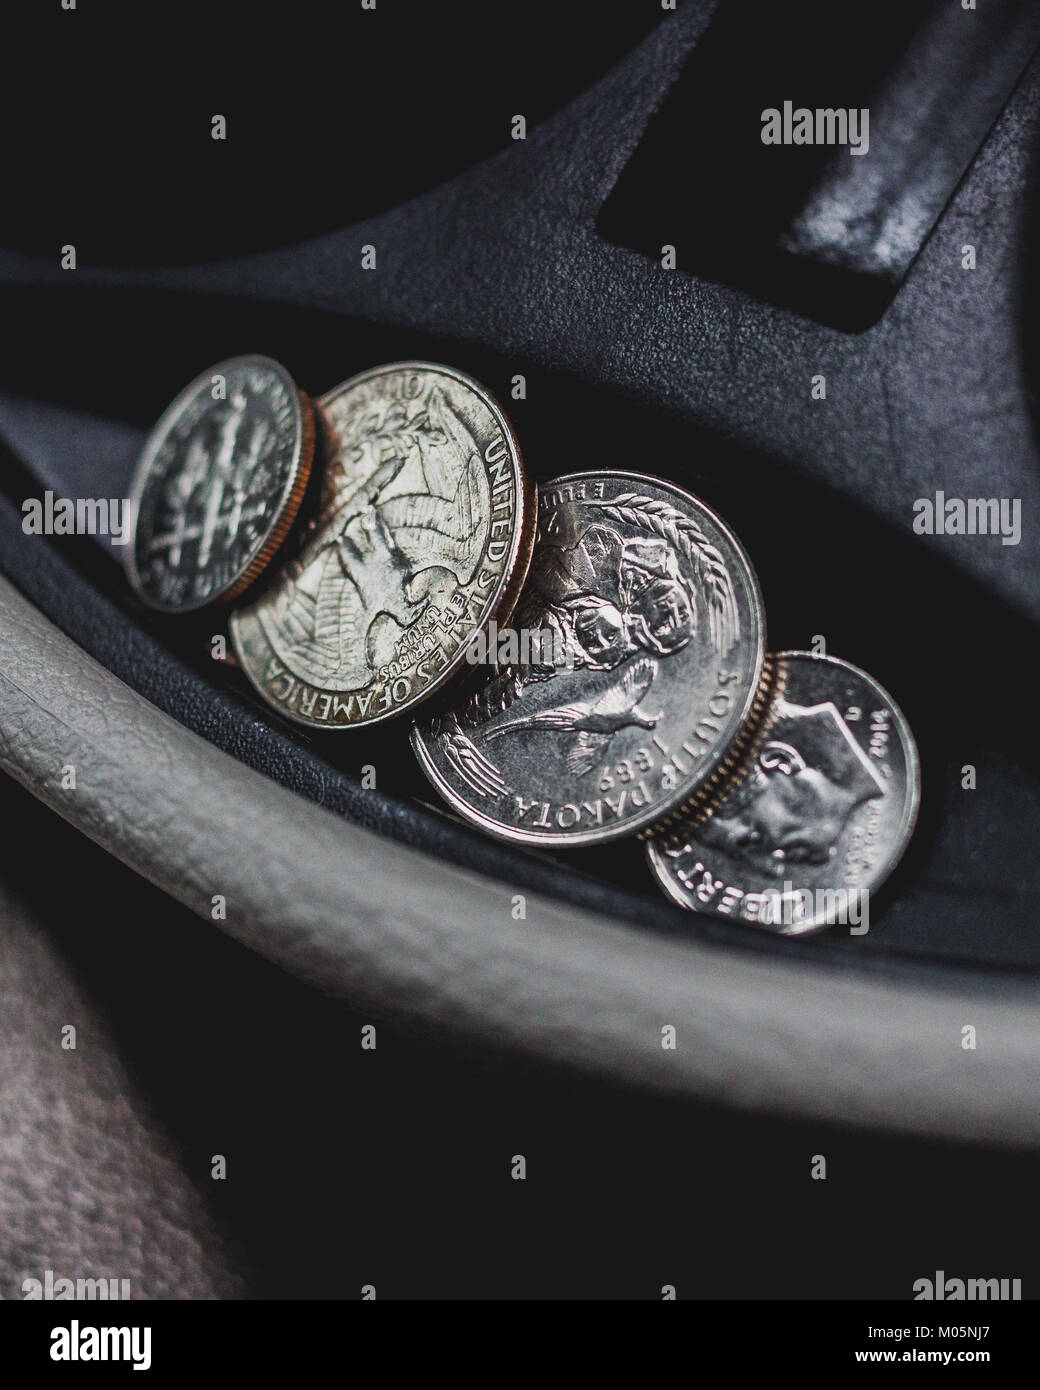 Coin holder immagini e fotografie stock ad alta risoluzione - Alamy